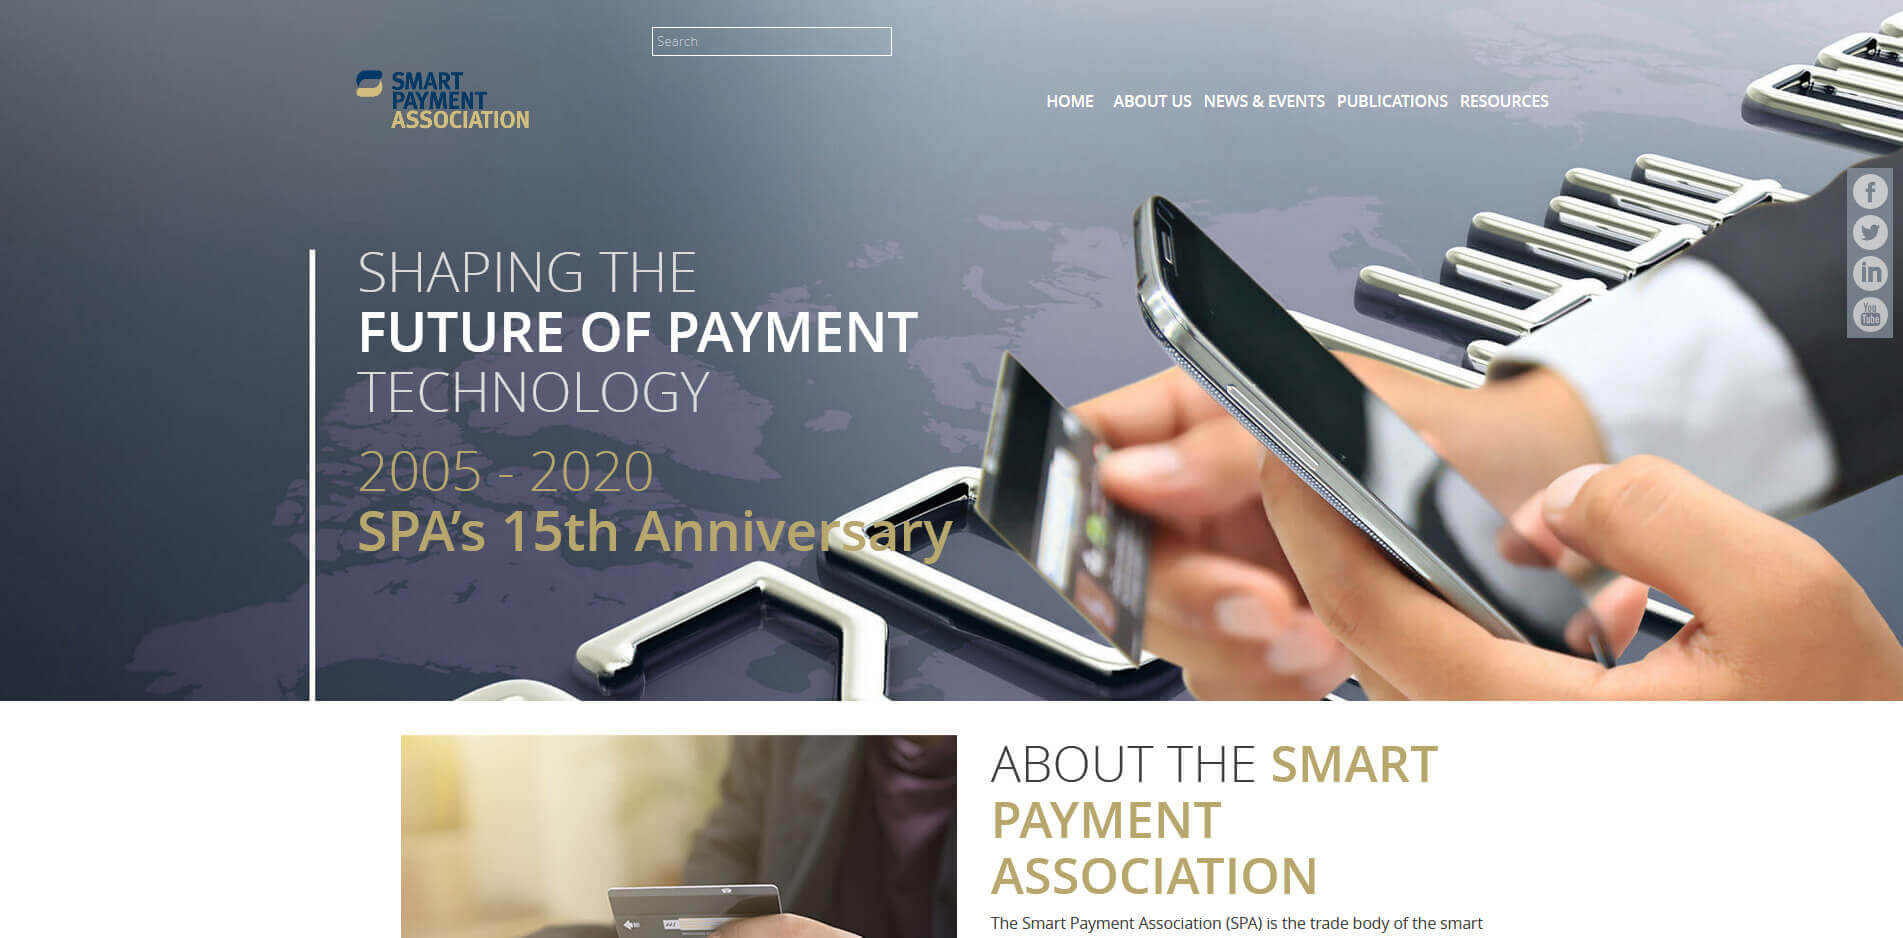 Smart Payment Association